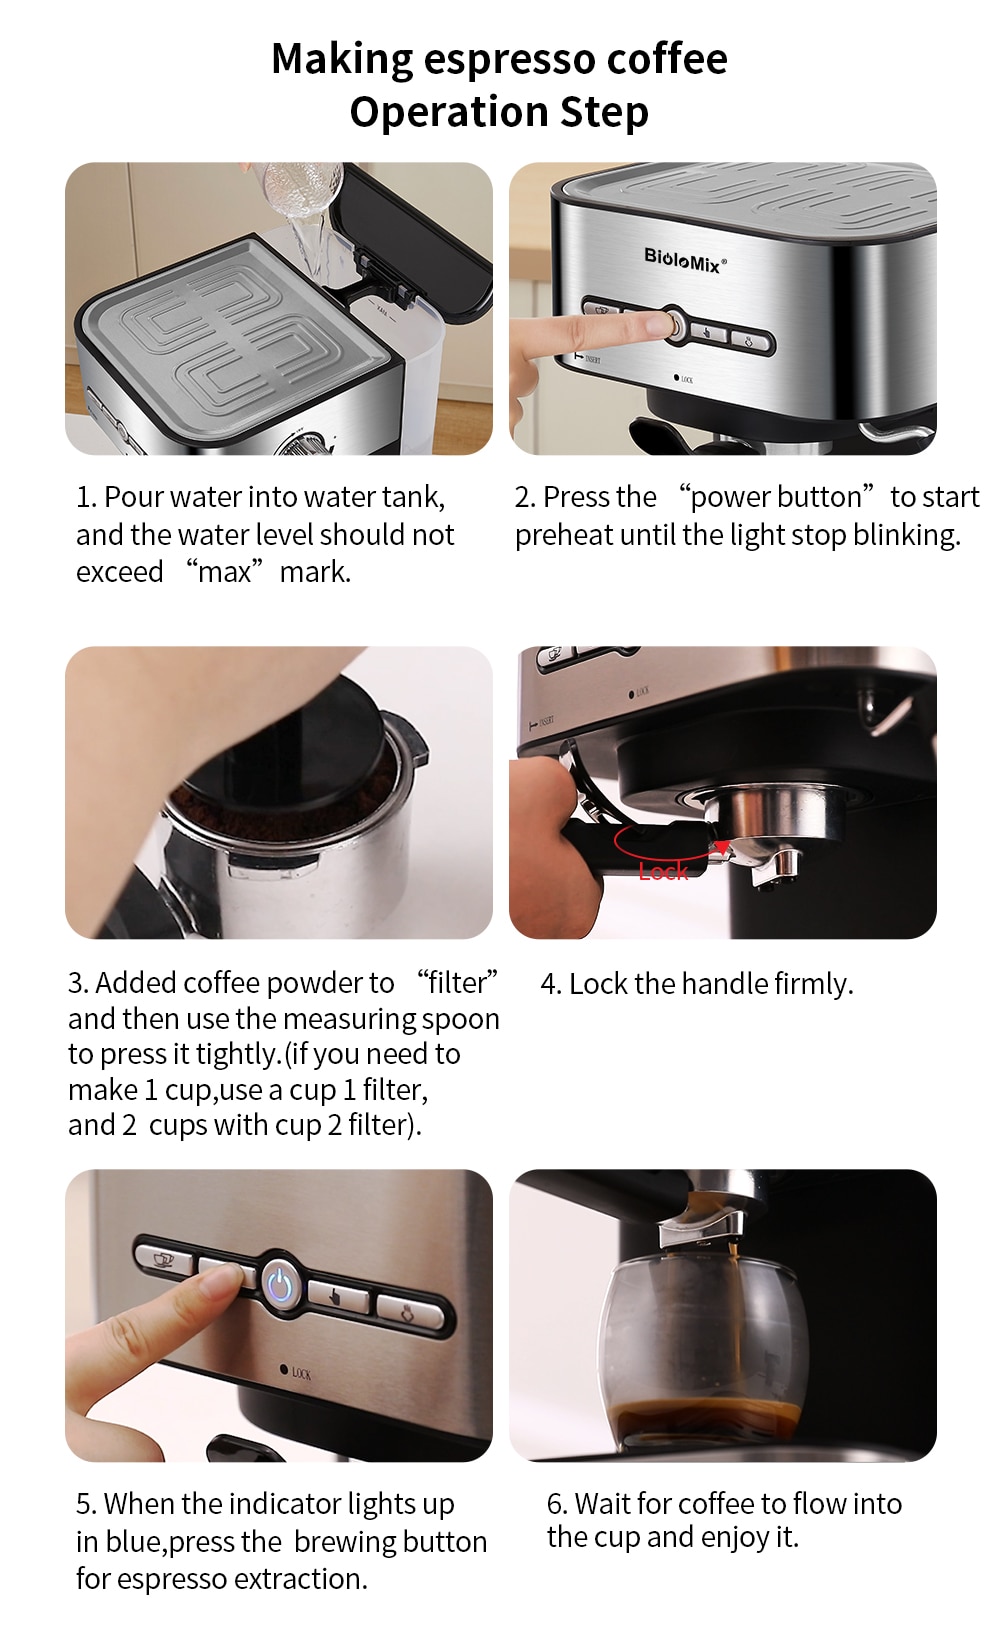 Semi automatic espresso coffee maker with hot steam